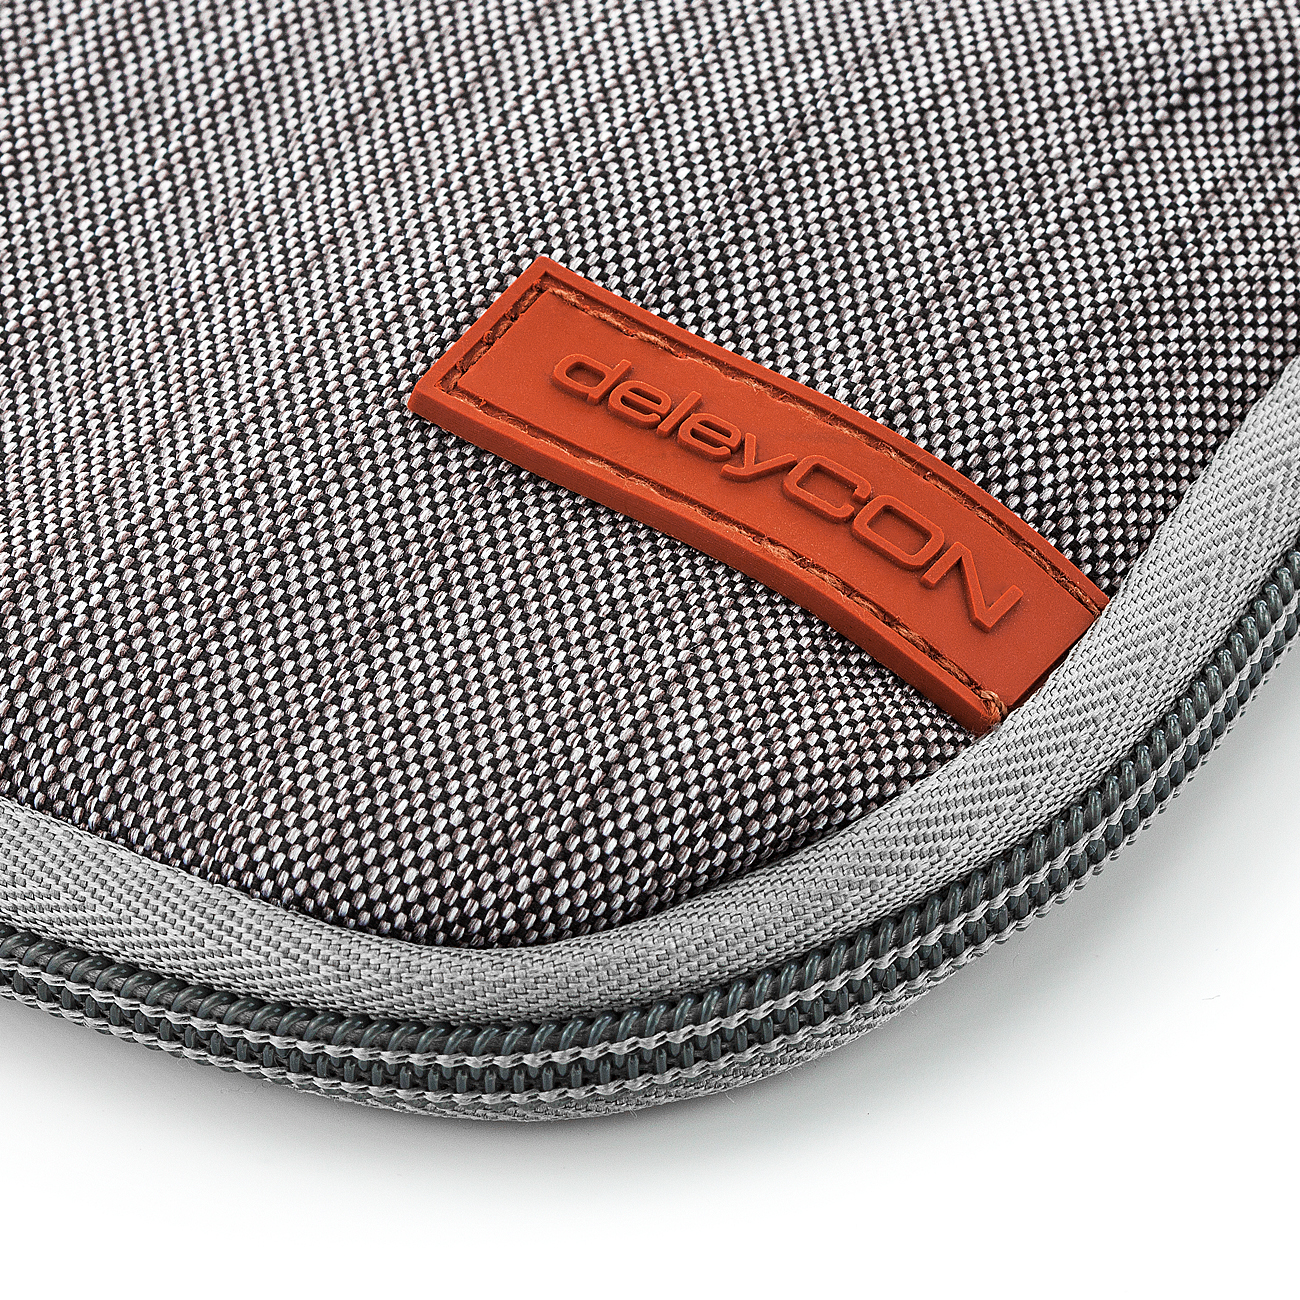 deleyCON Notebook-Tasche für MacBook Laptop bis 17,3 Schwarz 43,94cm Schutztasche aus robustem Nylon 2 Zubehörfächer verstärkte Polsterwände 